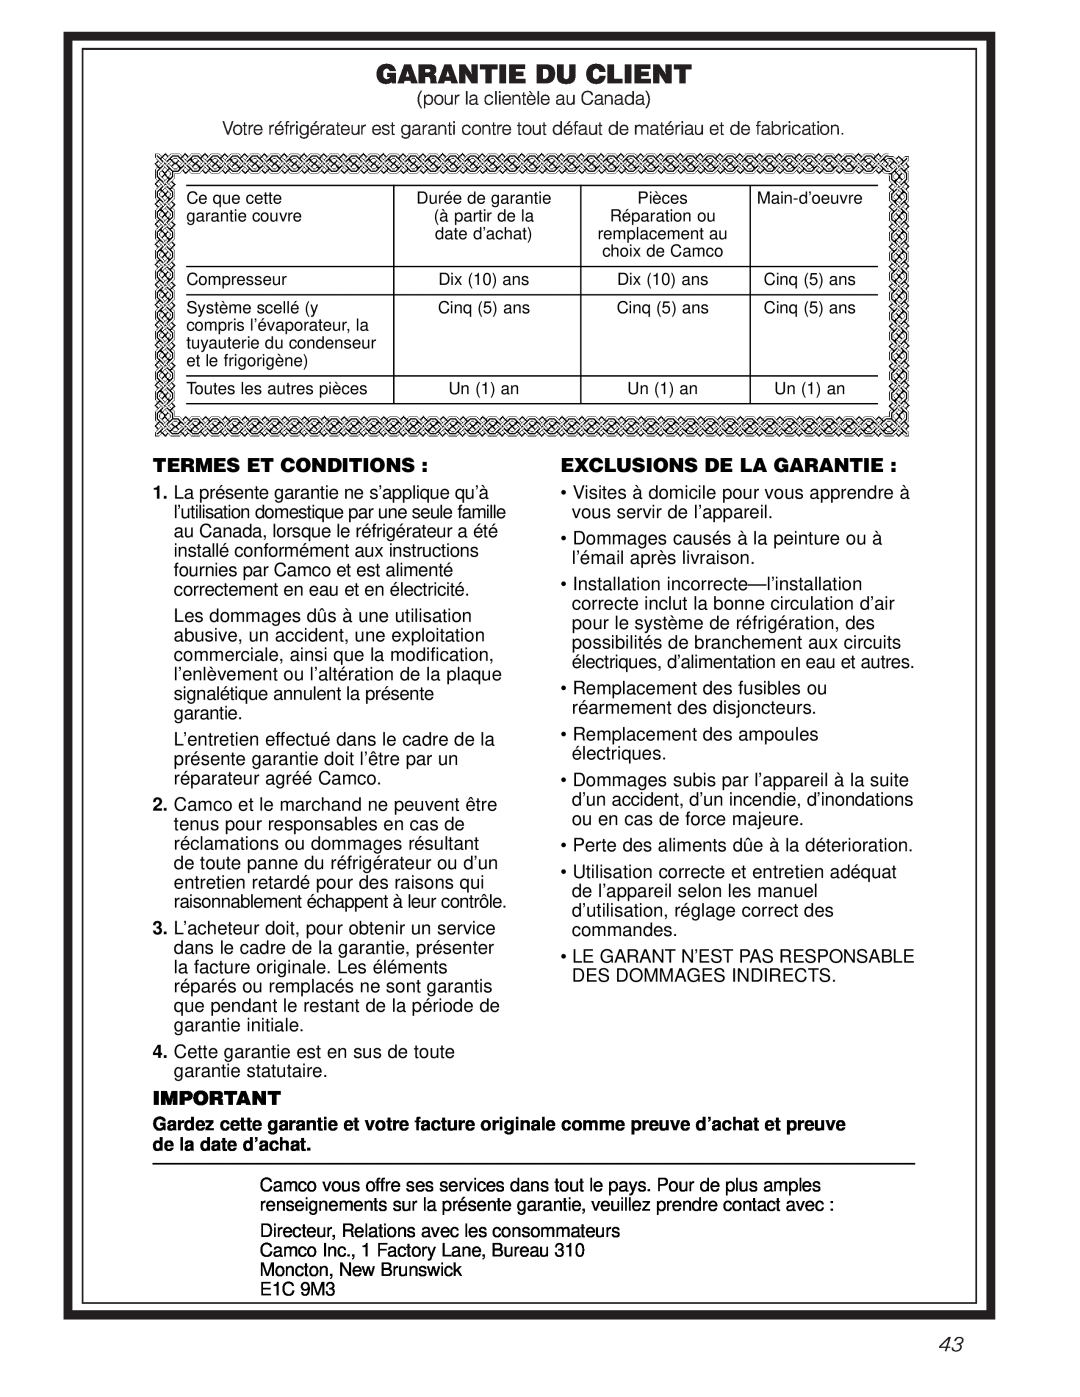 GE TCX22 owner manual Garantie Du Client, Termes Et Conditions, Exclusions De La Garantie 